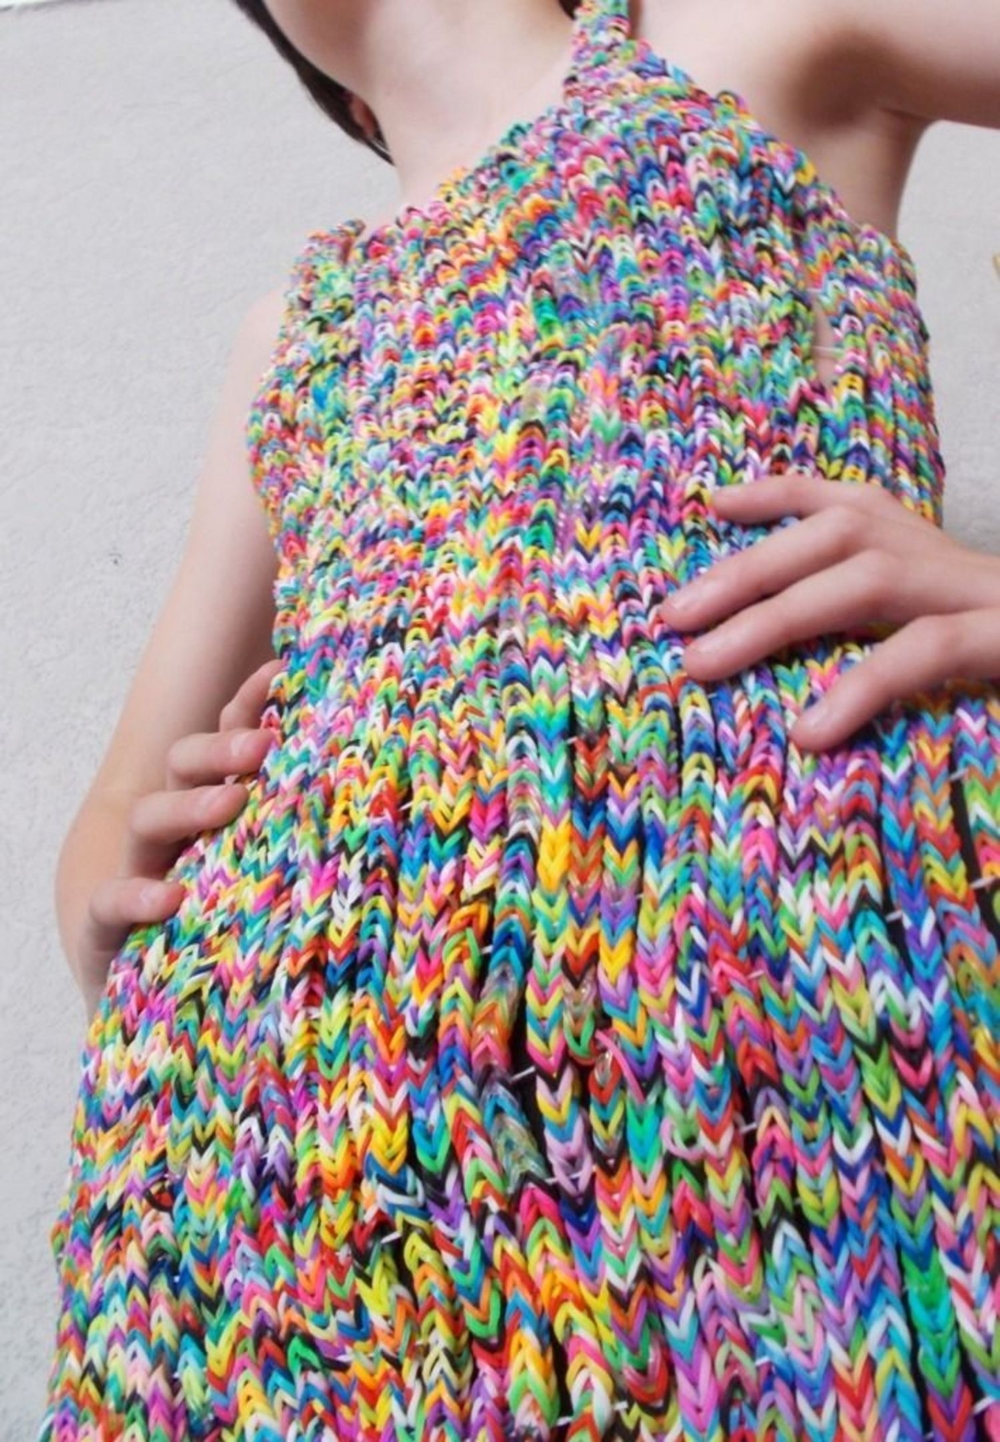 Платье из резиновых браслетиков за 170000 фунтов